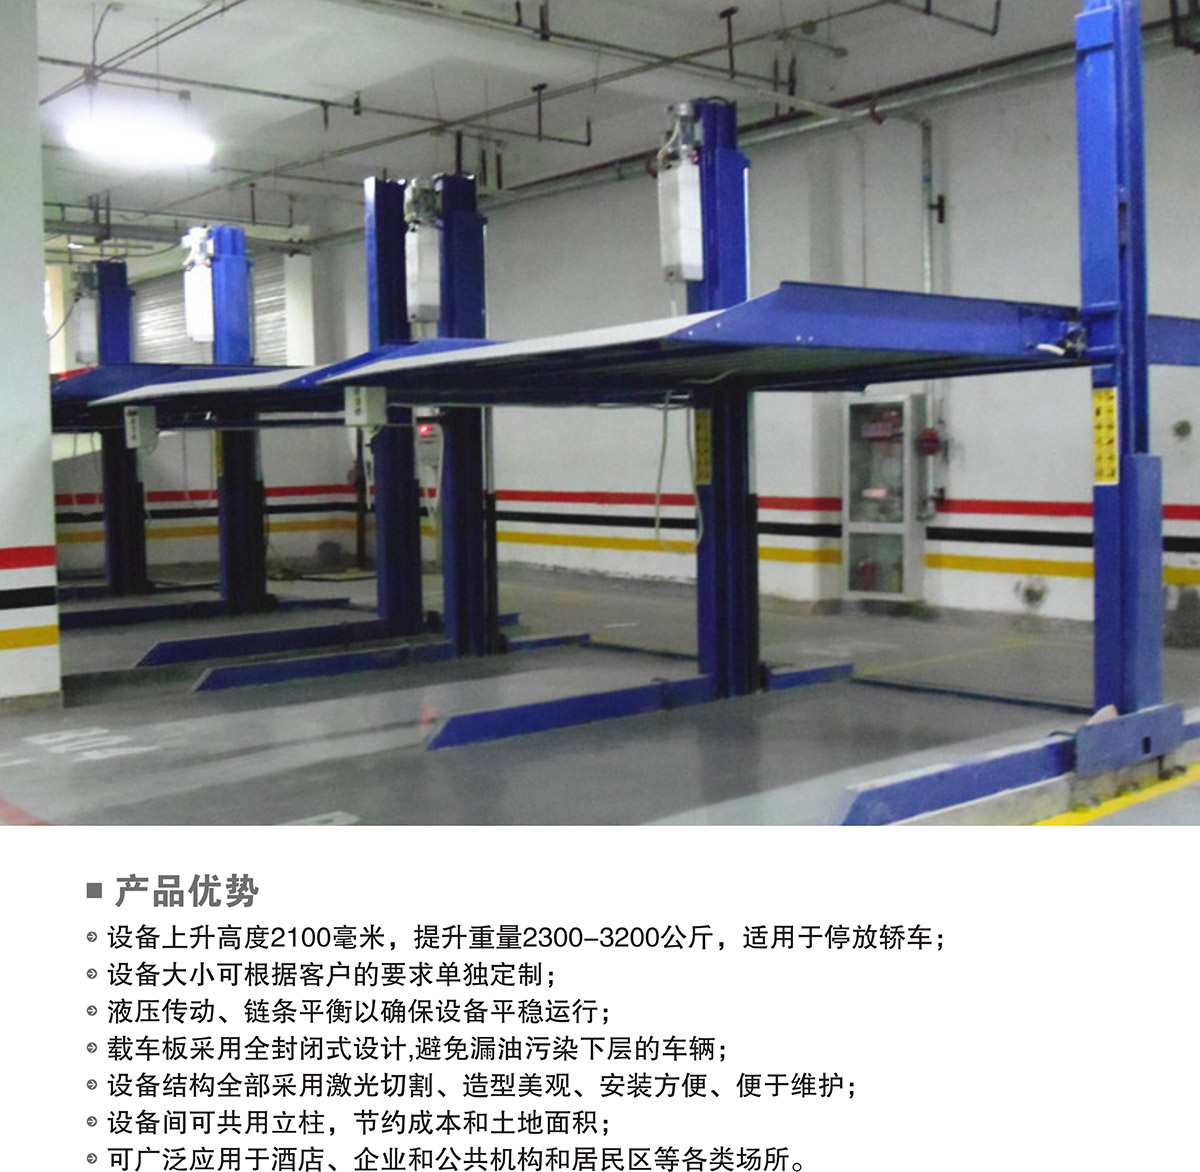 机械停车PJS两柱简易升降立体车库设备产品优势.jpg